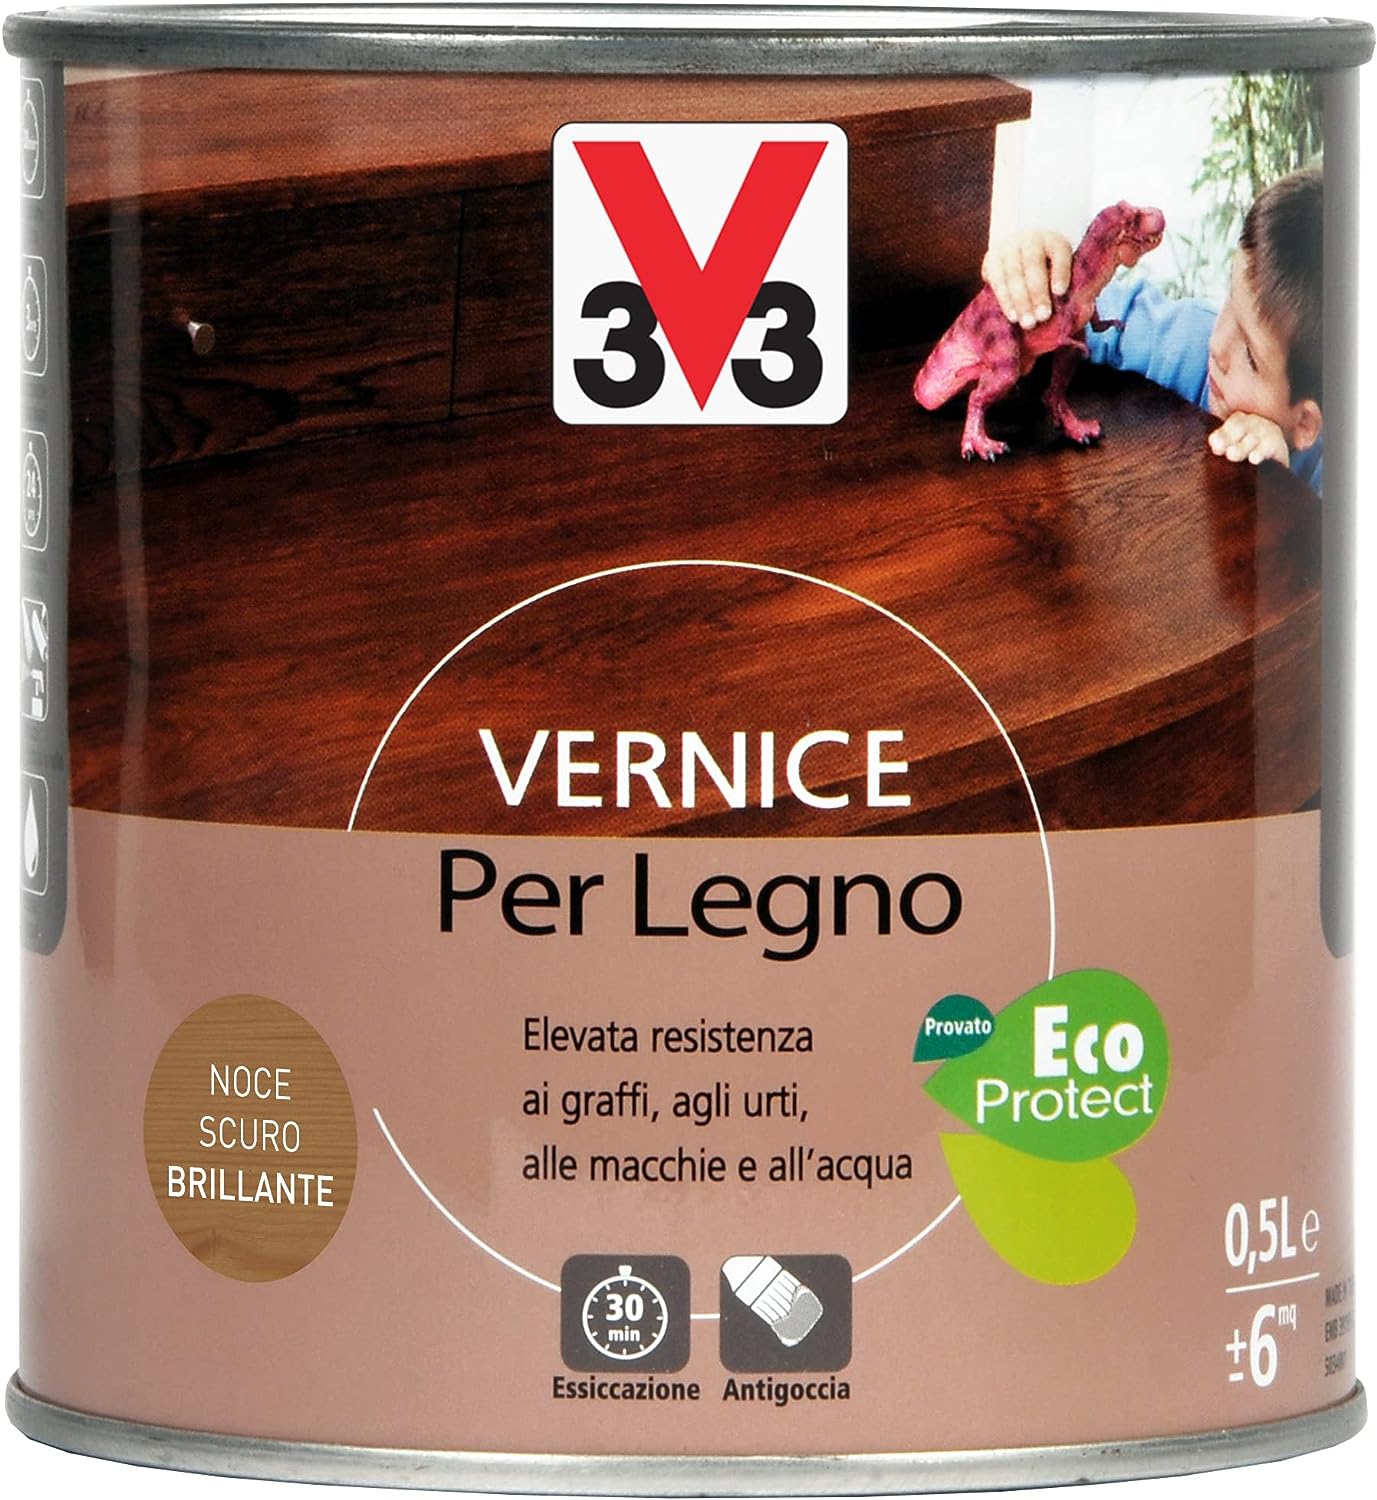 V33 Vernice Per Legno Per Interni Eco Protect - 0,5L